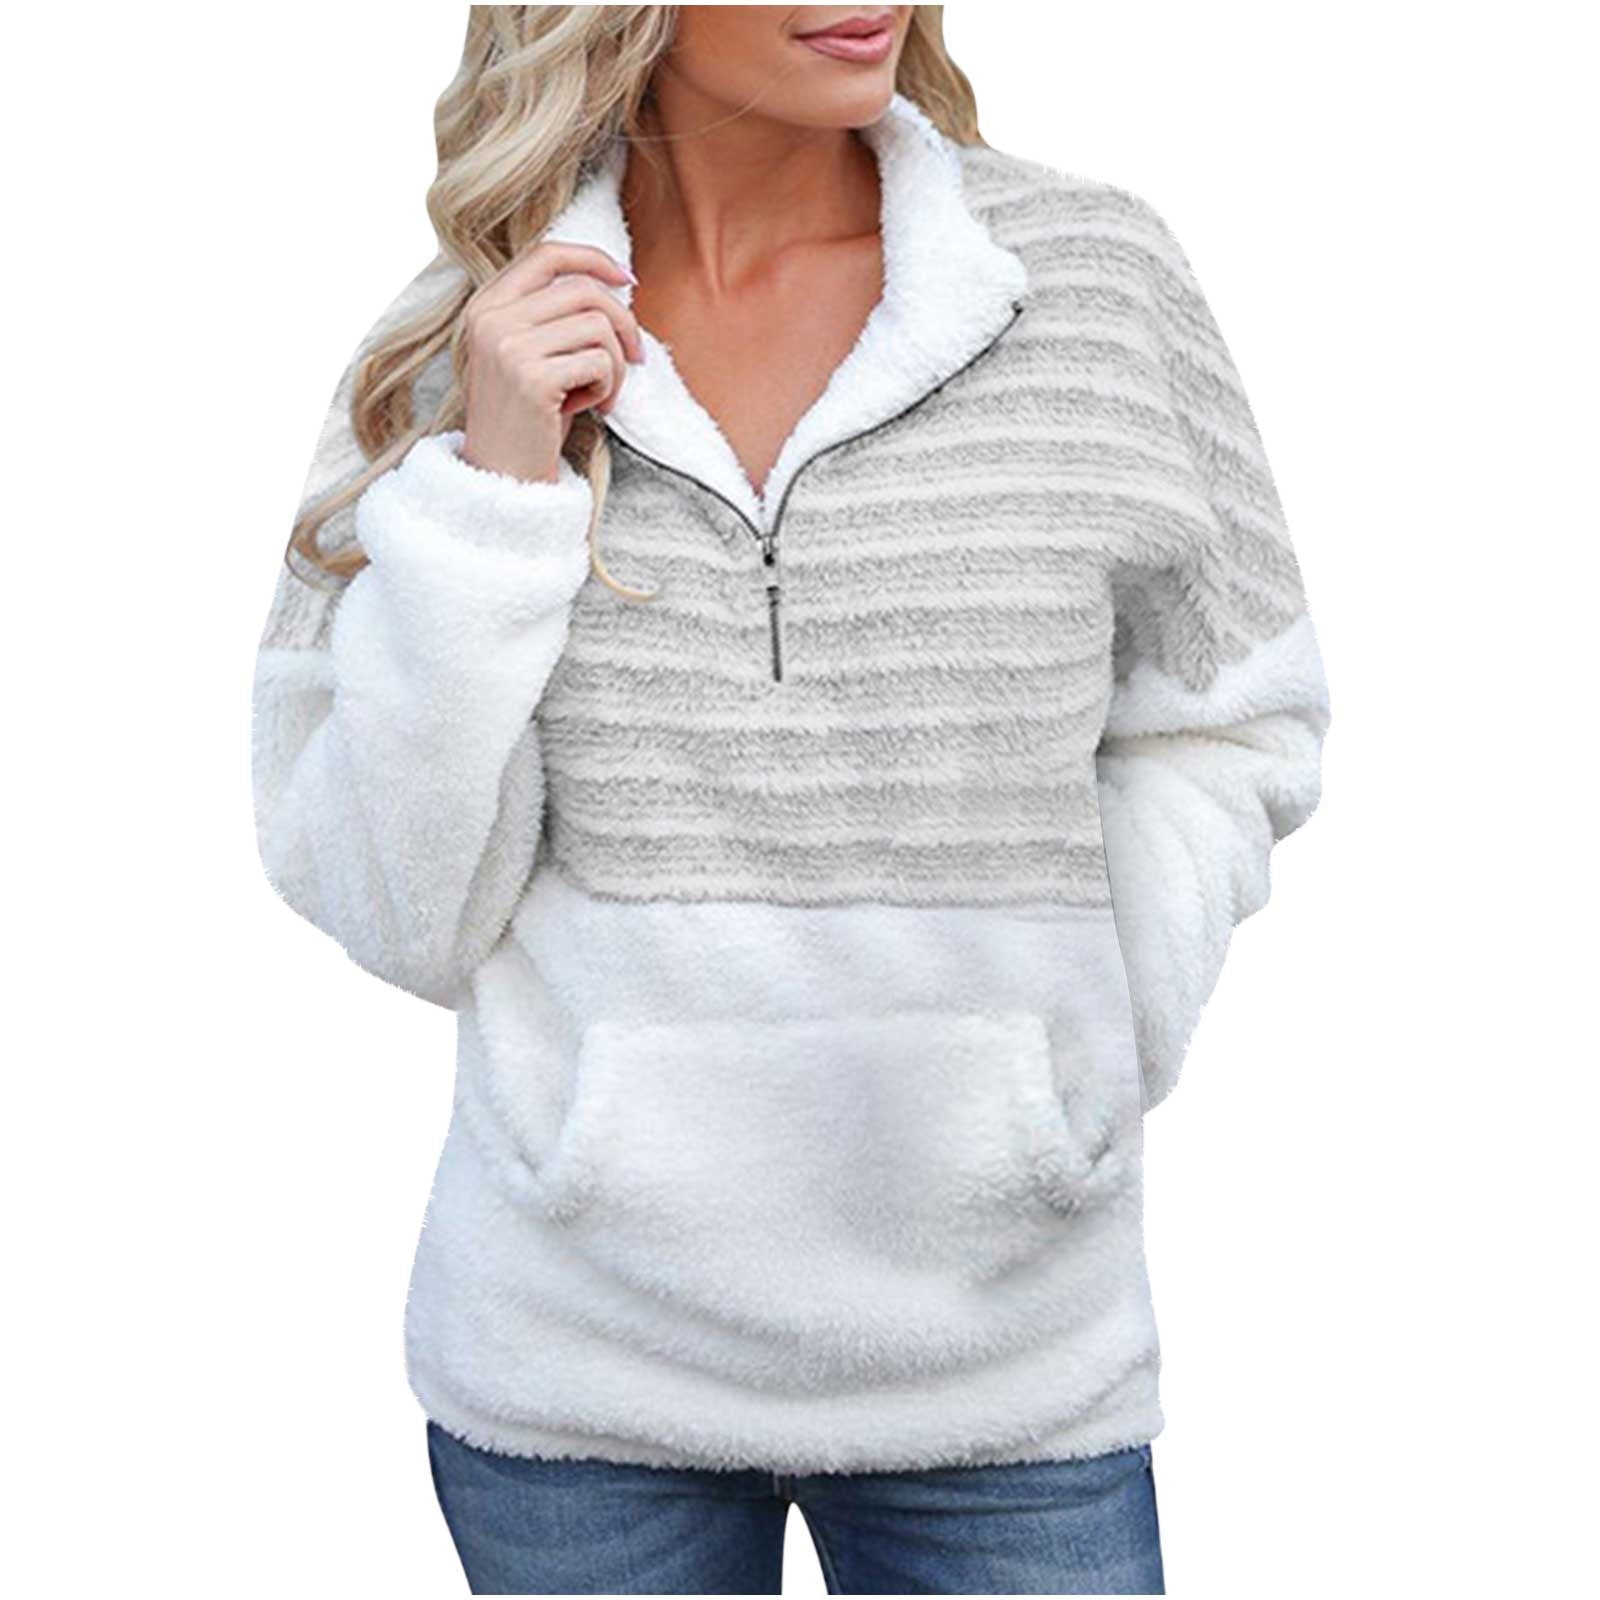 Women's Half Zip Long Sleeve Fleece Sweatshirt With Pockets Ladies